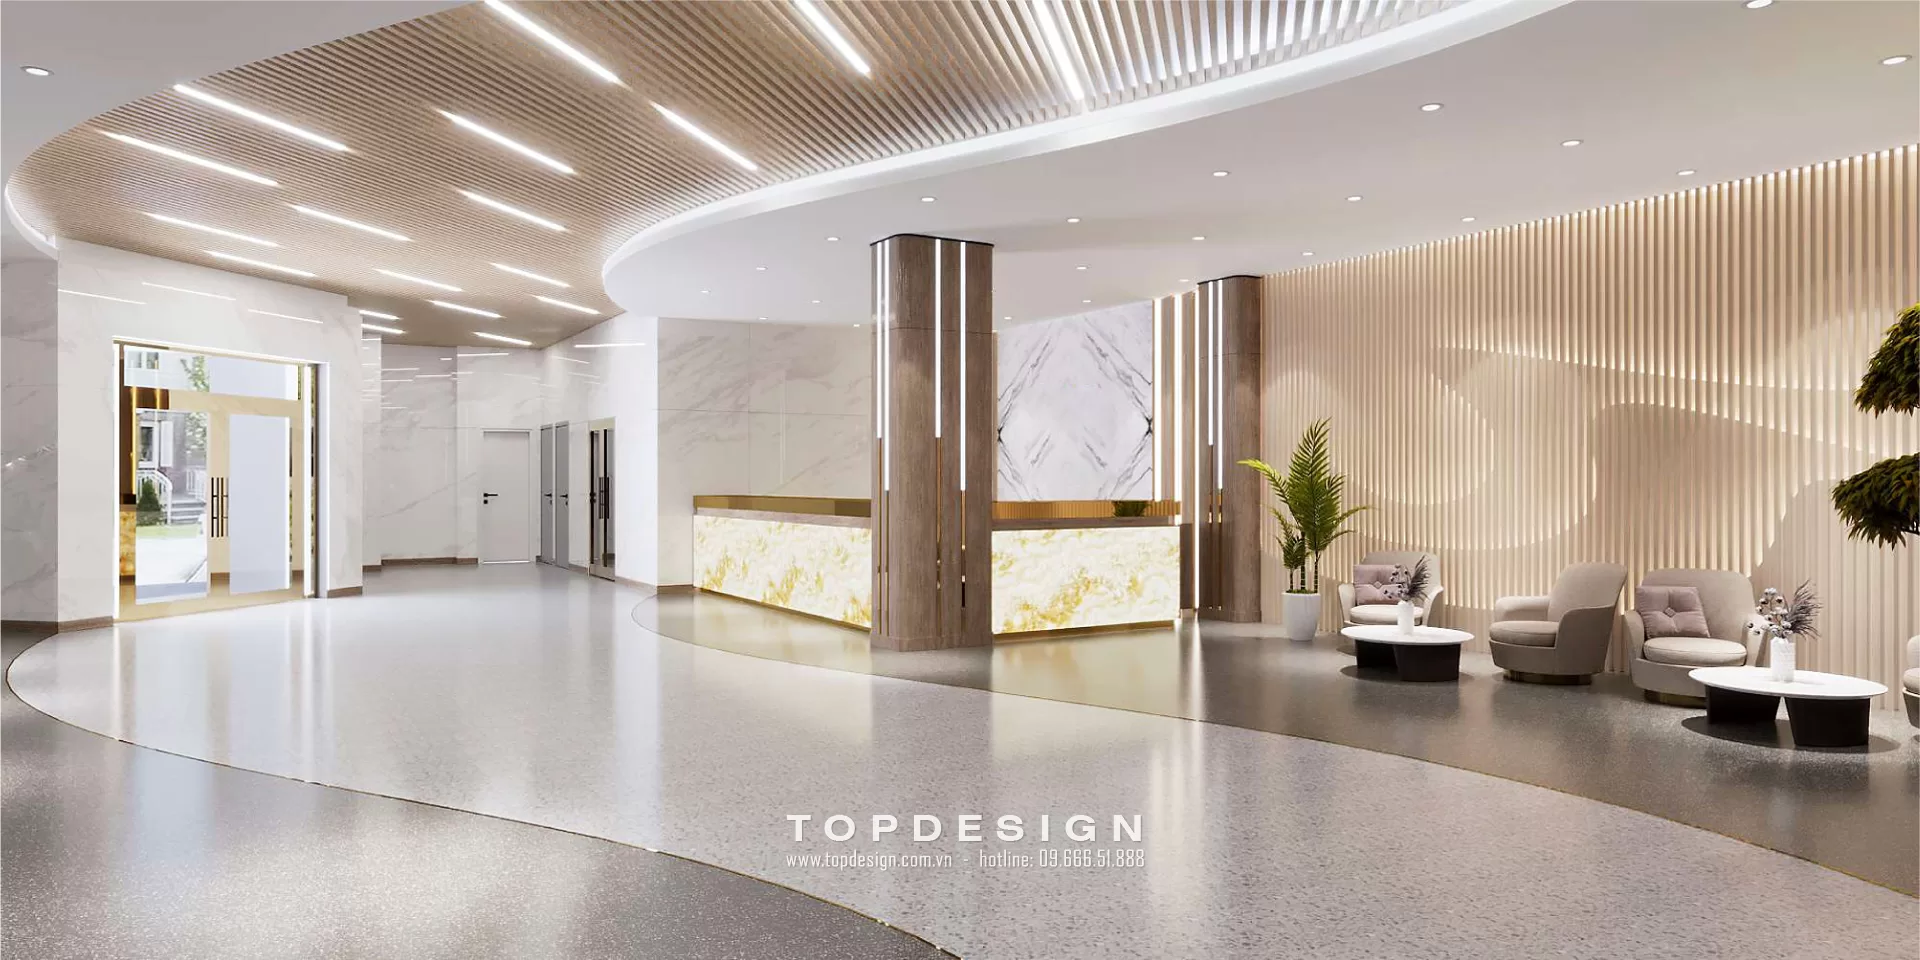 7. Thiết kế văn phòng ngân hàng - Topdesign